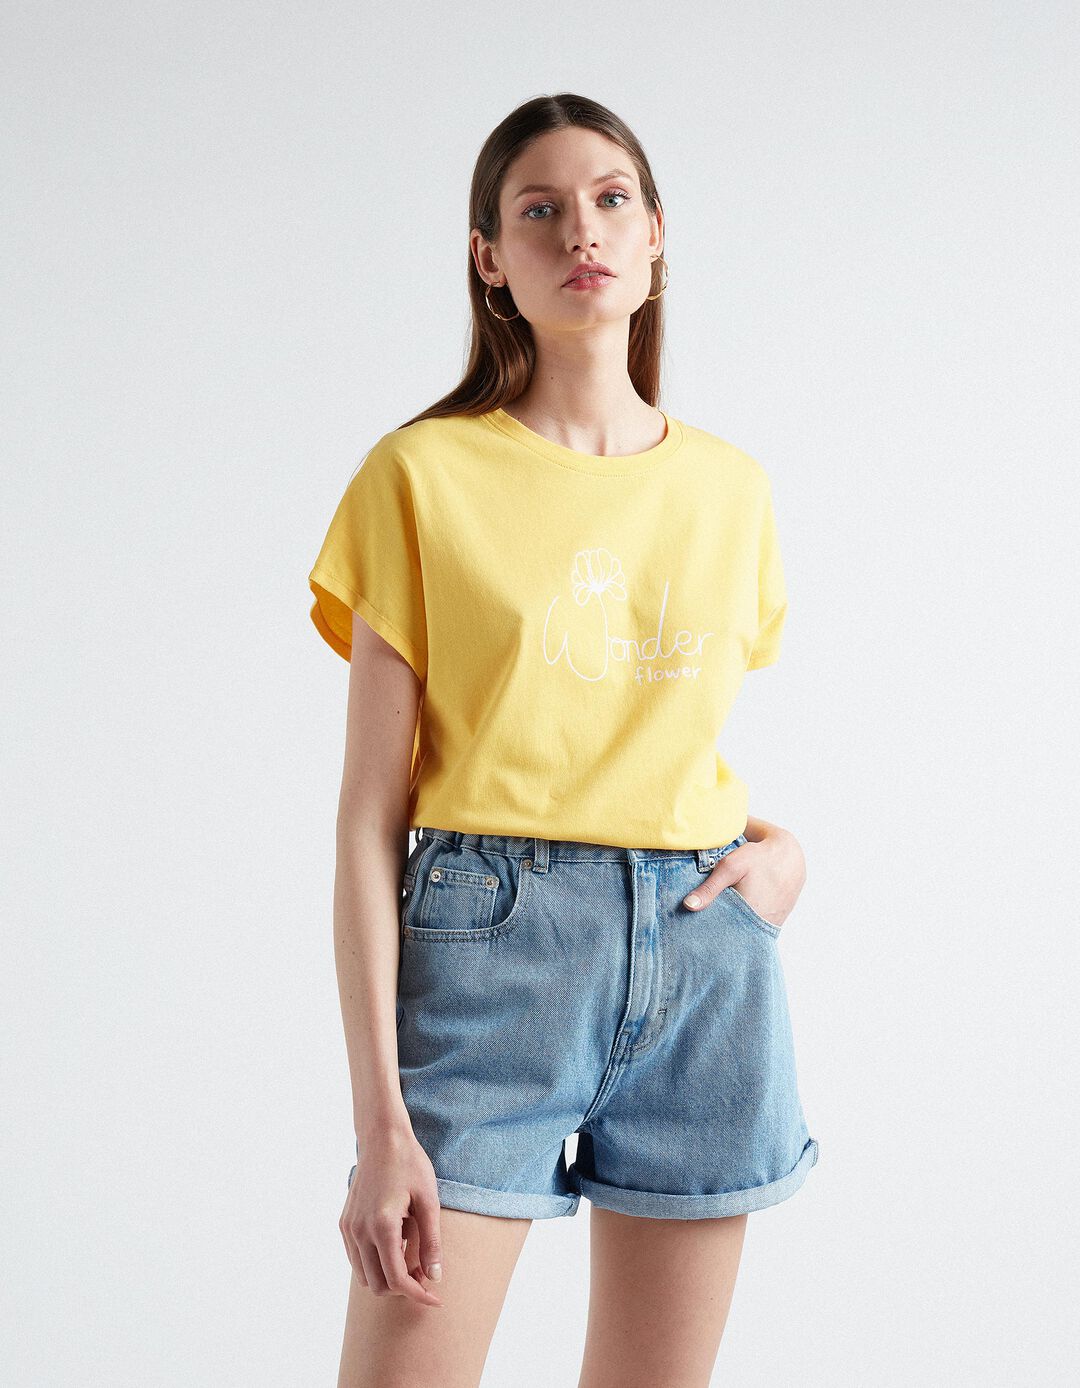 Printed T-shirt, Women, Yellow